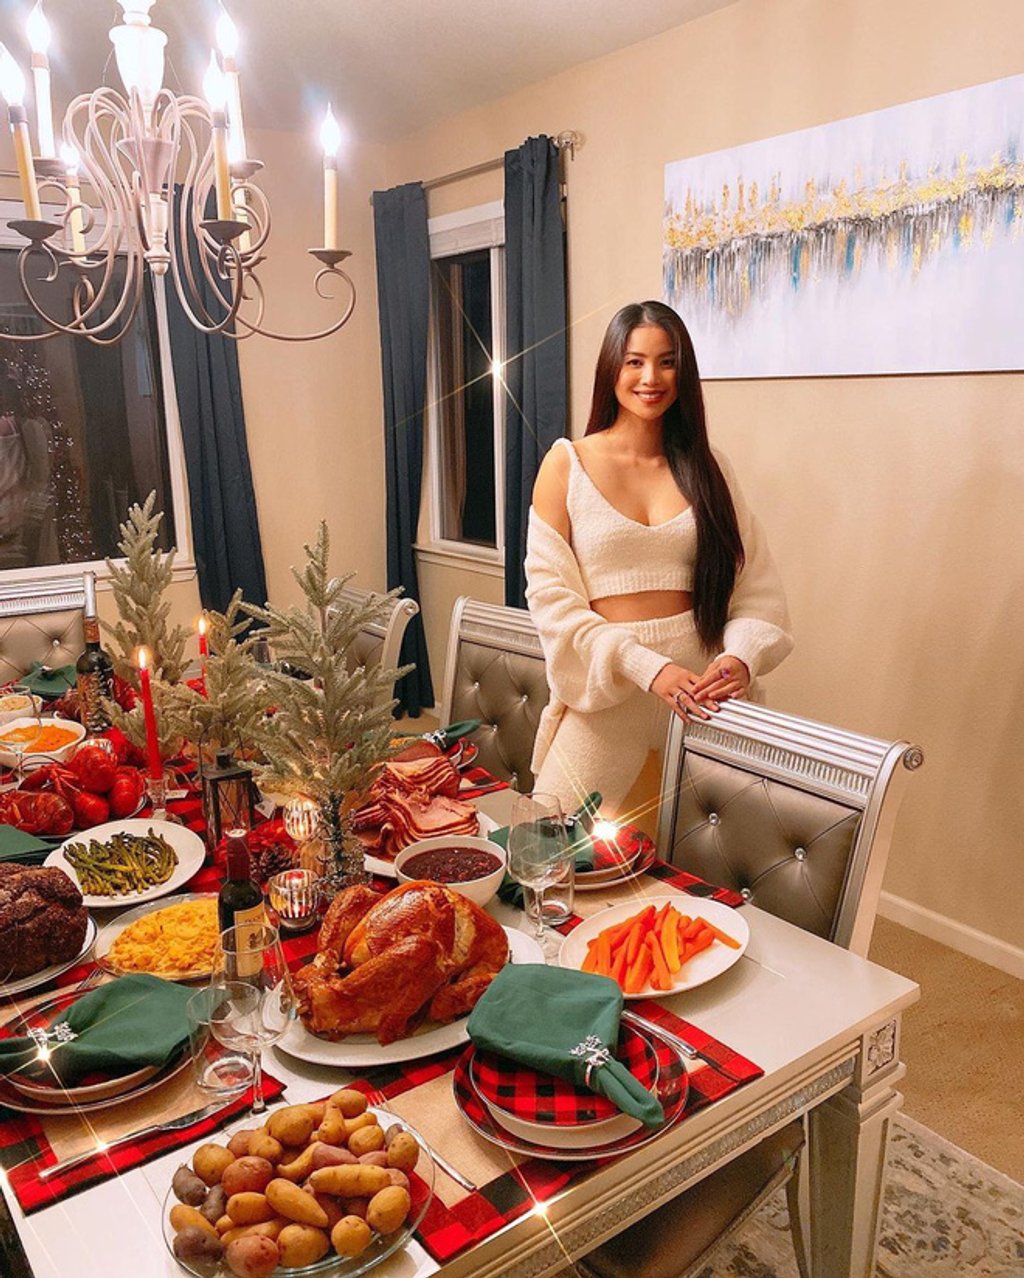 Bàn ăn ấm cúng cùng cây thông đỏ rực trong biệt thự nhà Hoa hậu Phạm Hương tại Mỹ trong mùa Giáng sinh 2020.